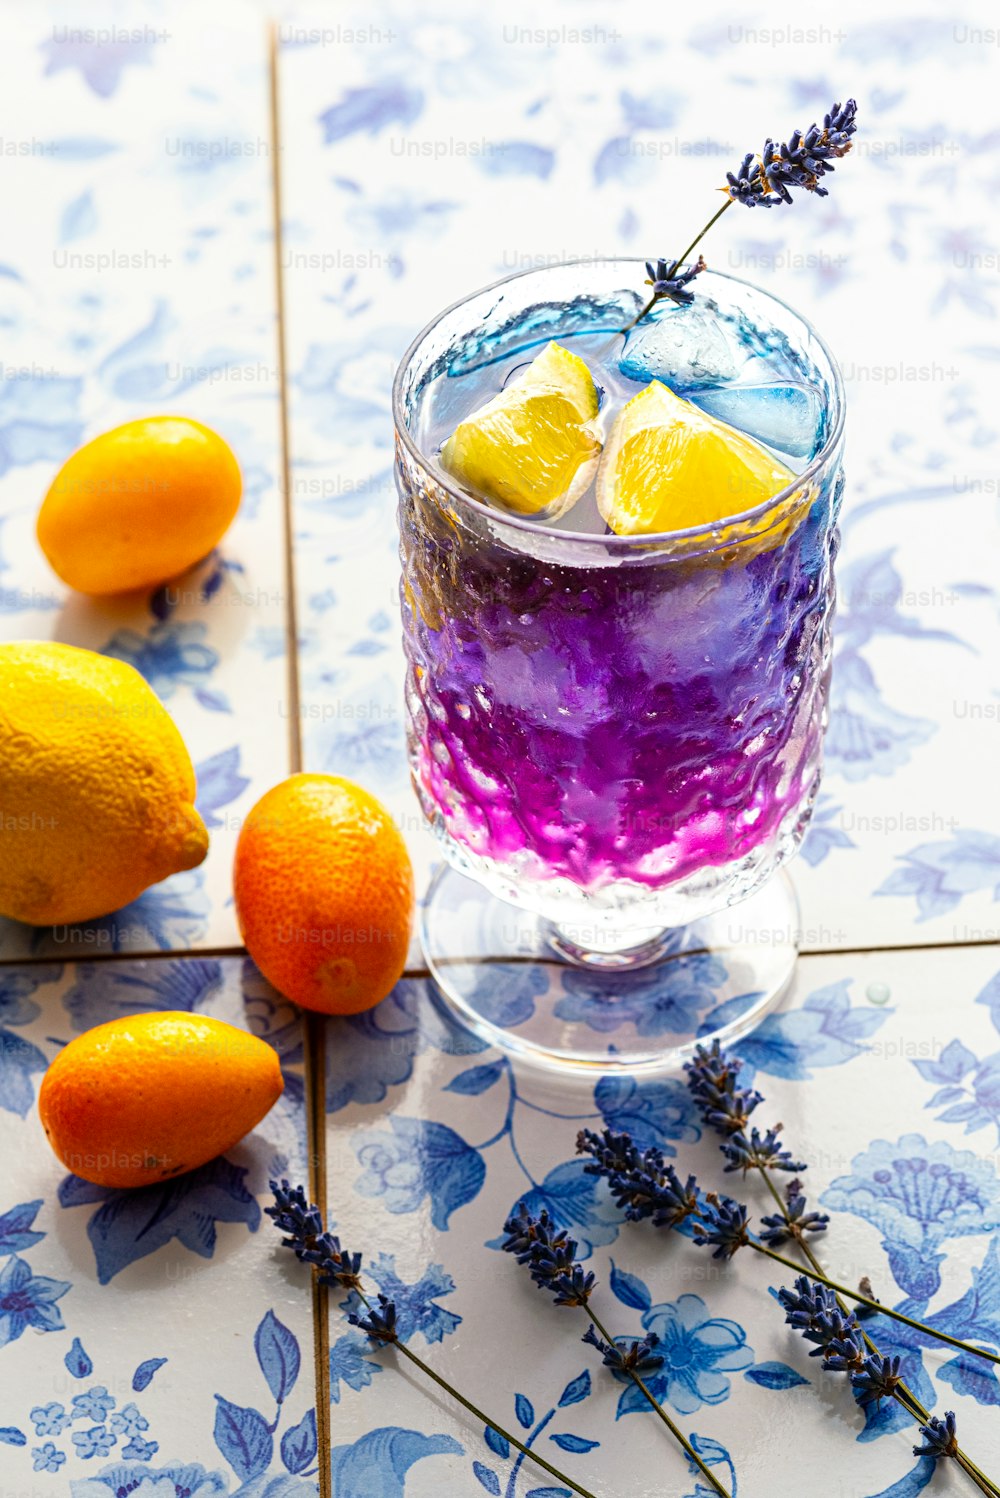 Un vaso lleno de líquido púrpura junto a limones y lavanda